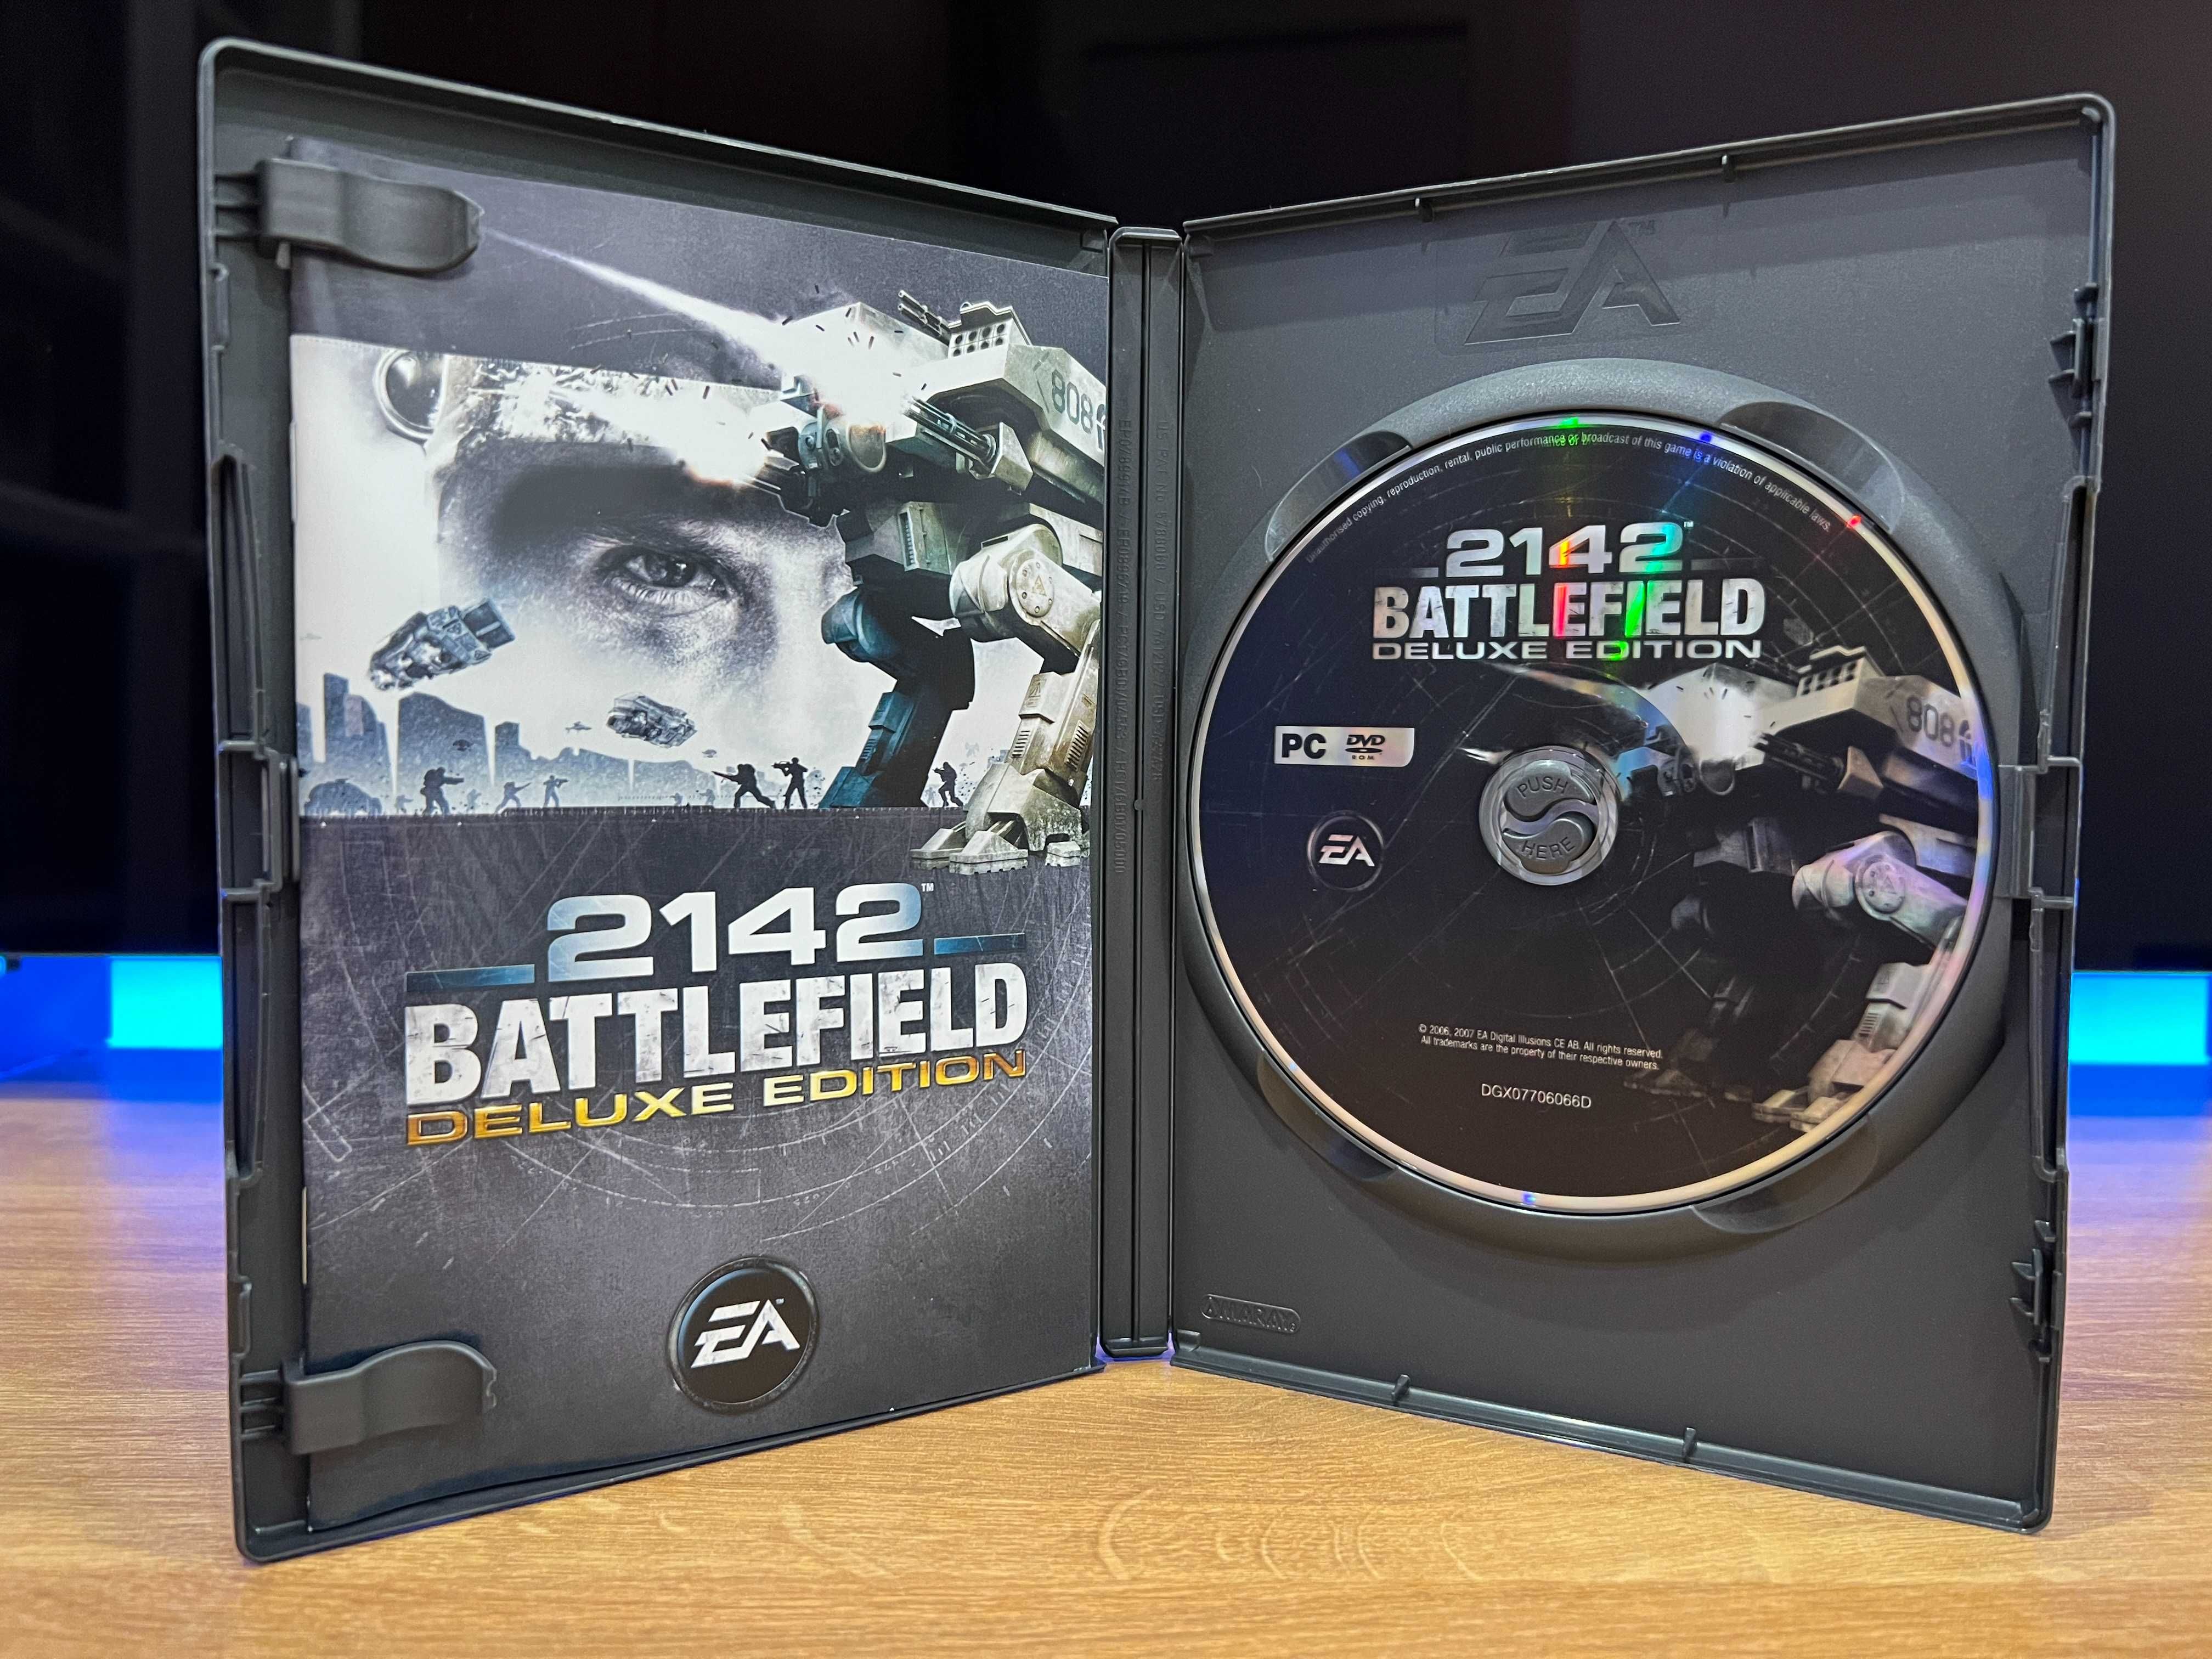 Battlefield 2142 Deluxe Edition (PC PL 2006) DVD BOX kompletne wydanie